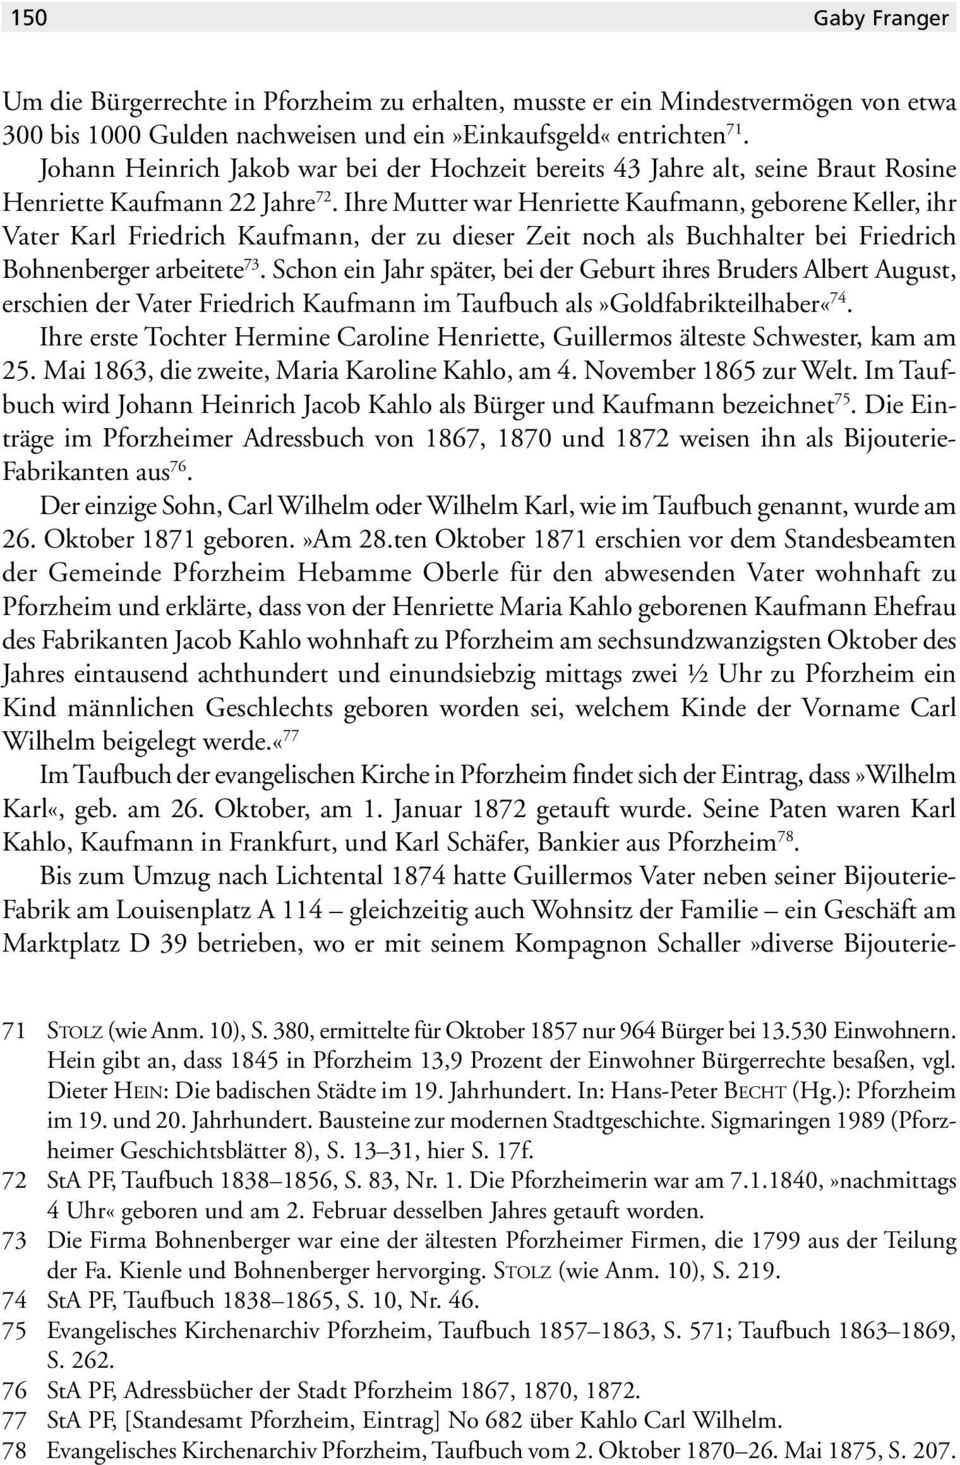 Ihre Mutter war Henriette Kaufmann, geborene Keller, ihr Vater Karl Friedrich Kaufmann, der zu dieser Zeit noch als Buchhalter bei Friedrich Bohnenberger arbeitete 73.